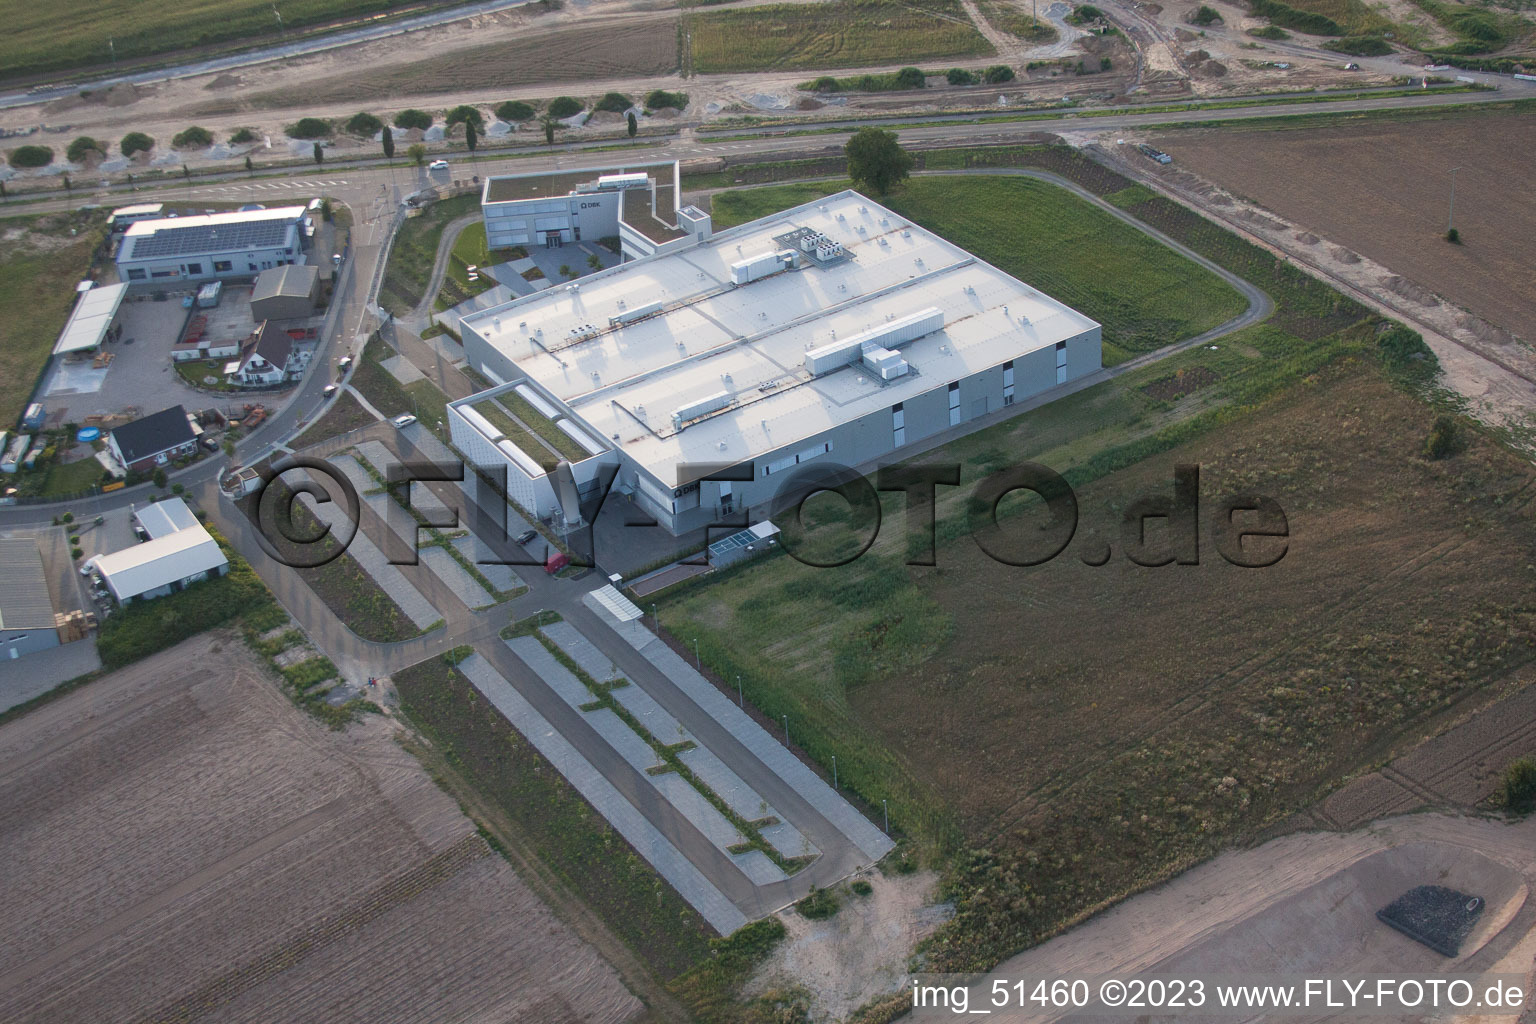 Zone commerciale Nord, nouveau bâtiment DBK à Rülzheim dans le département Rhénanie-Palatinat, Allemagne du point de vue du drone